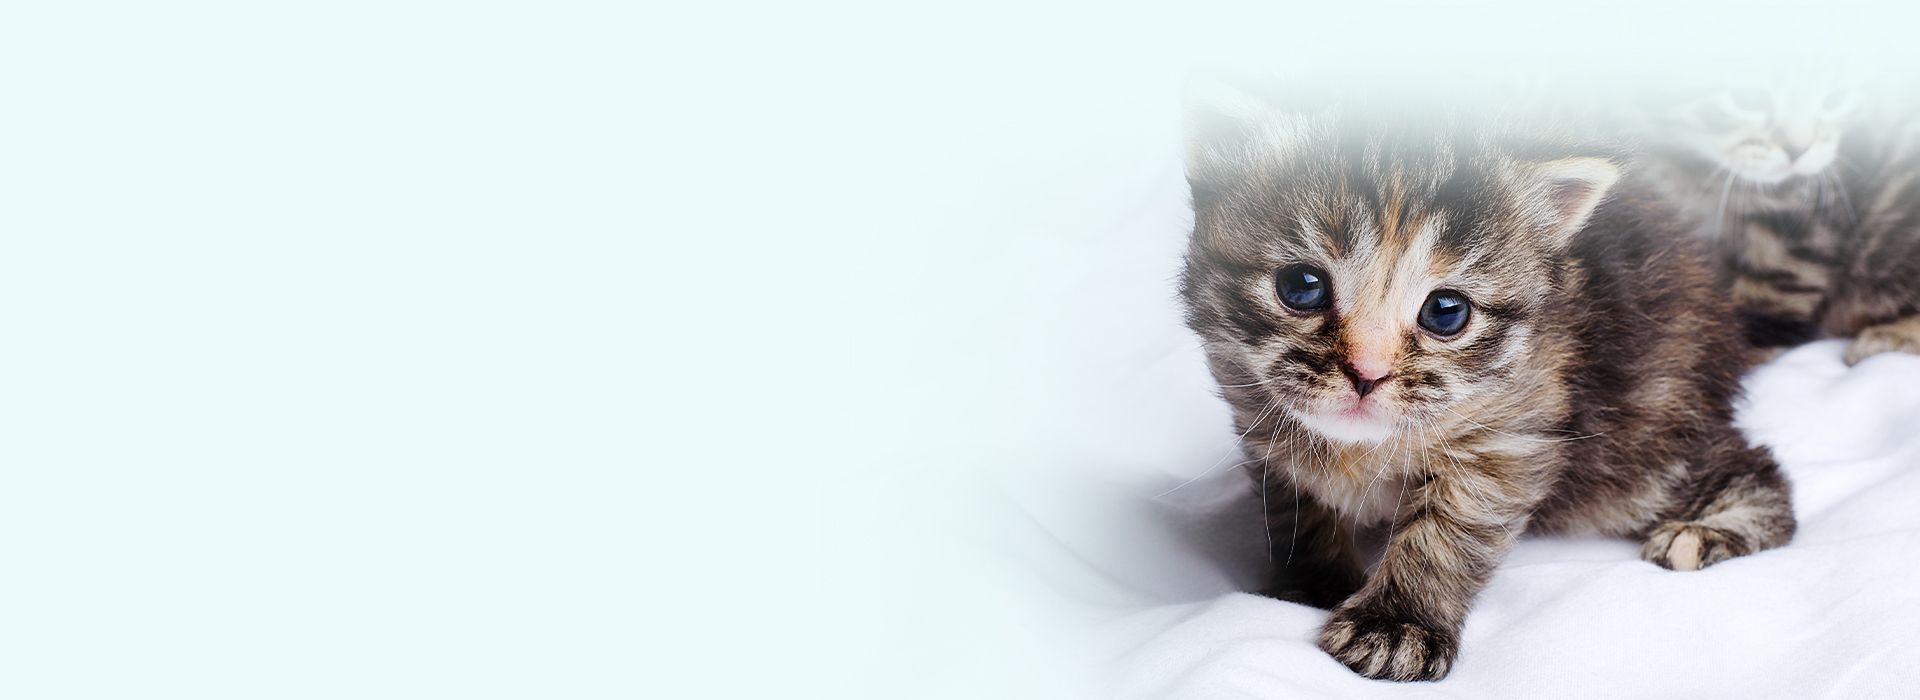 cute striped kitten on a bed